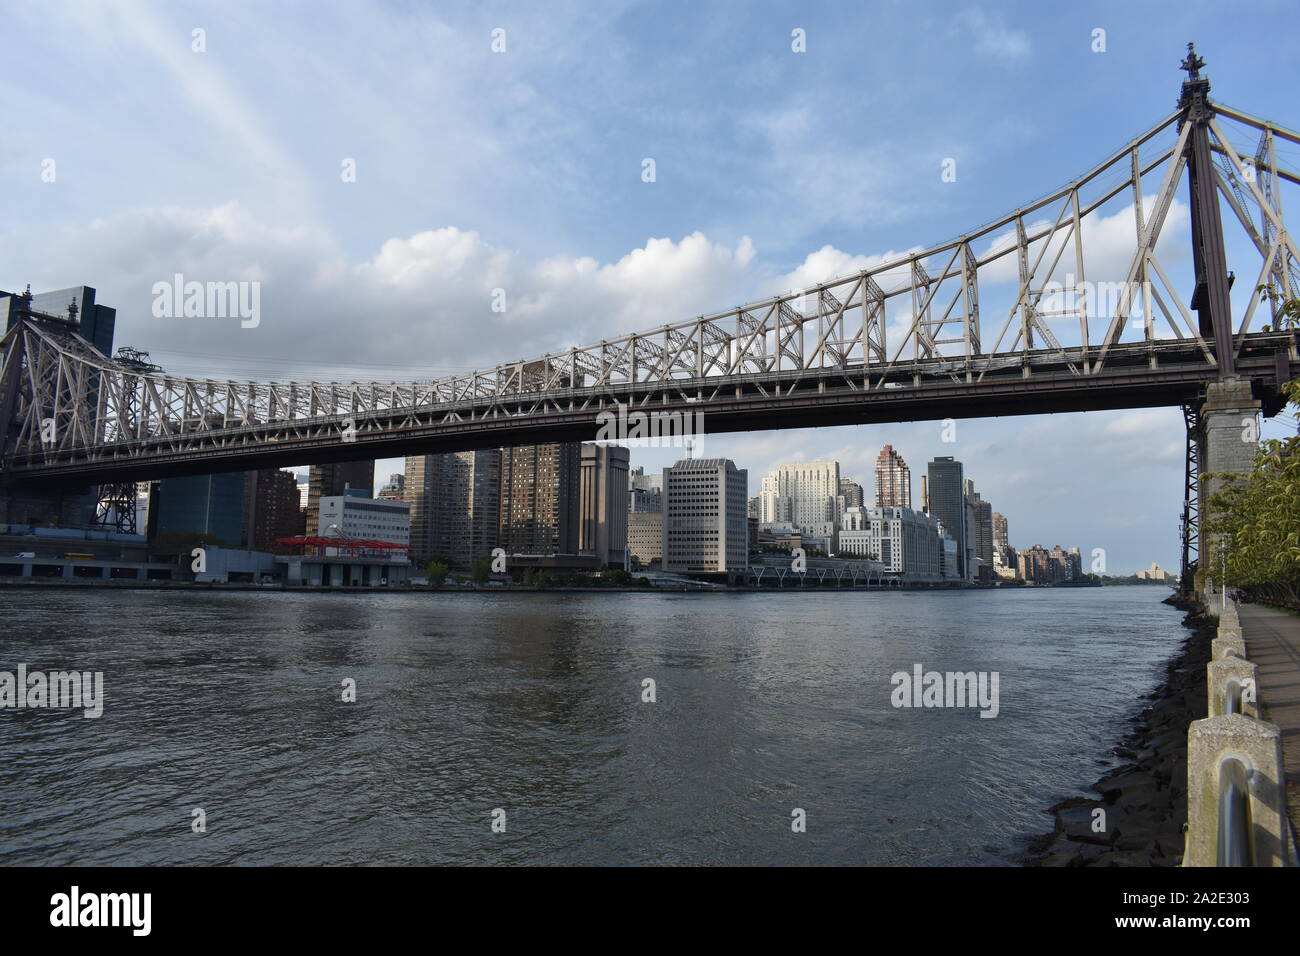 L'Ed Koch Queensboro Bridge, alias la 59e rue, pont et le midtown Manhattan, vue de la ville de New York's Roosevelt Island. -05 Banque D'Images